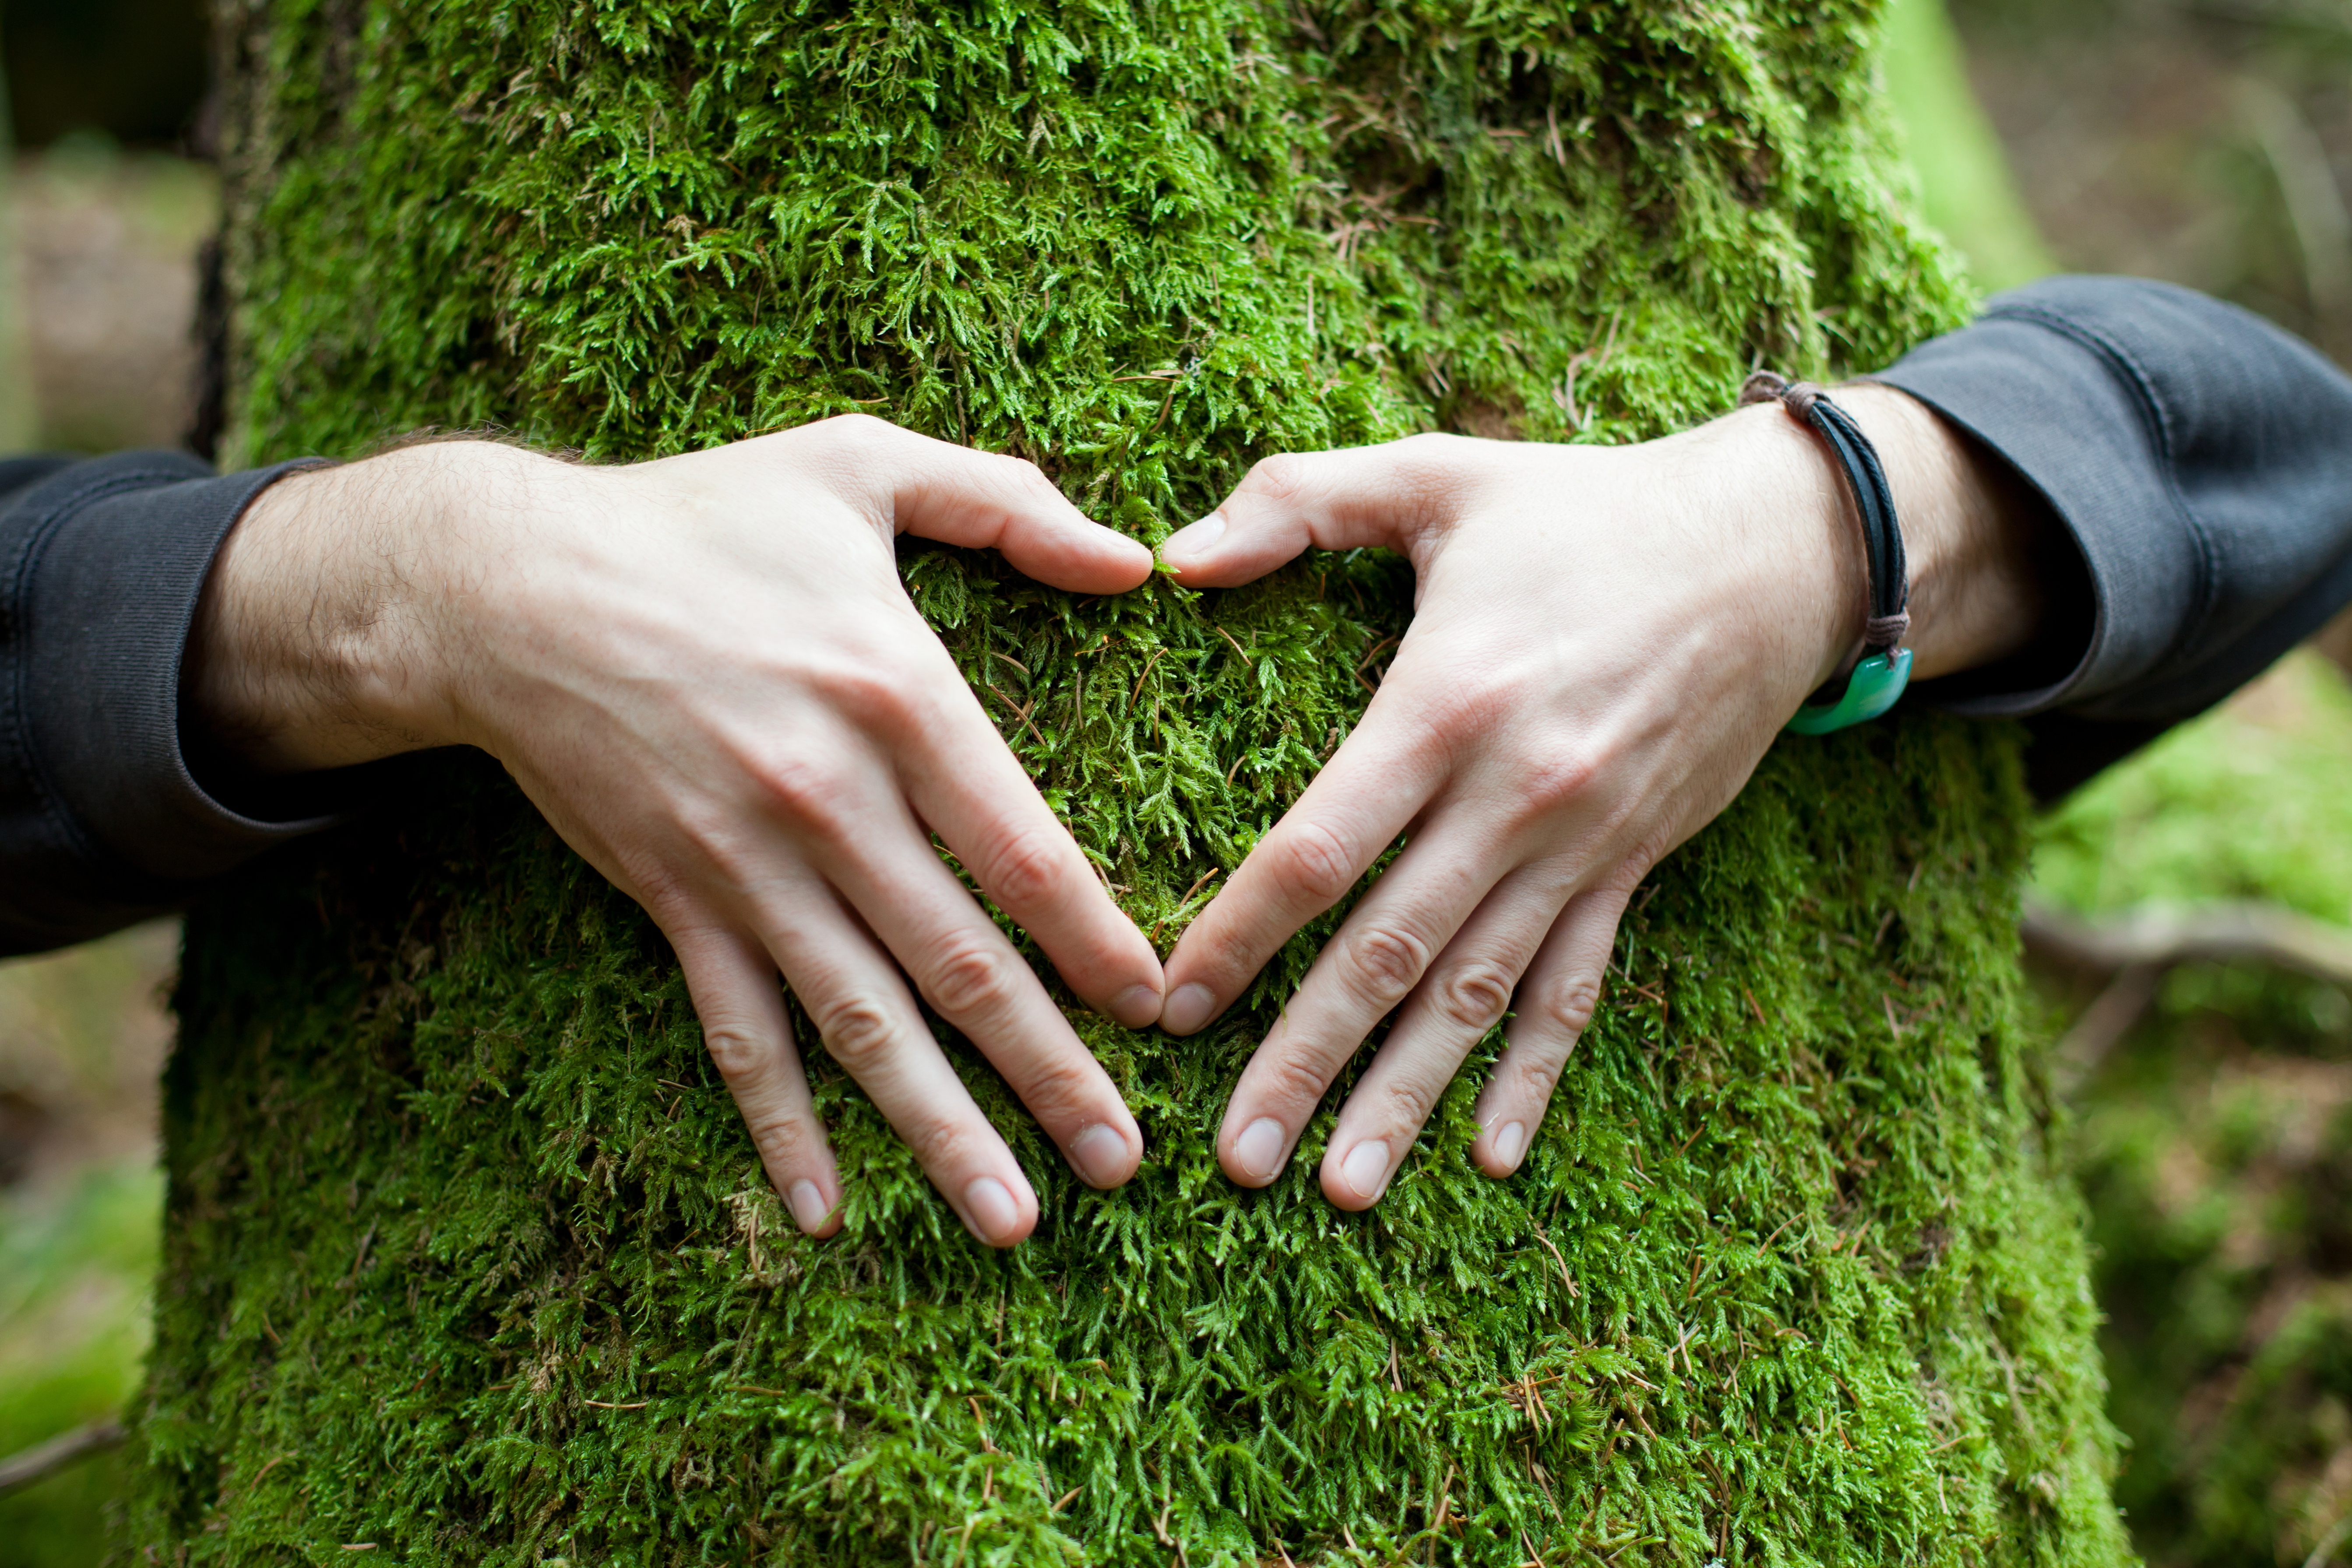 Сохранение хороших отношений. Человек и природа. Любовь к природе. Забота о природе. Дерево в руках.